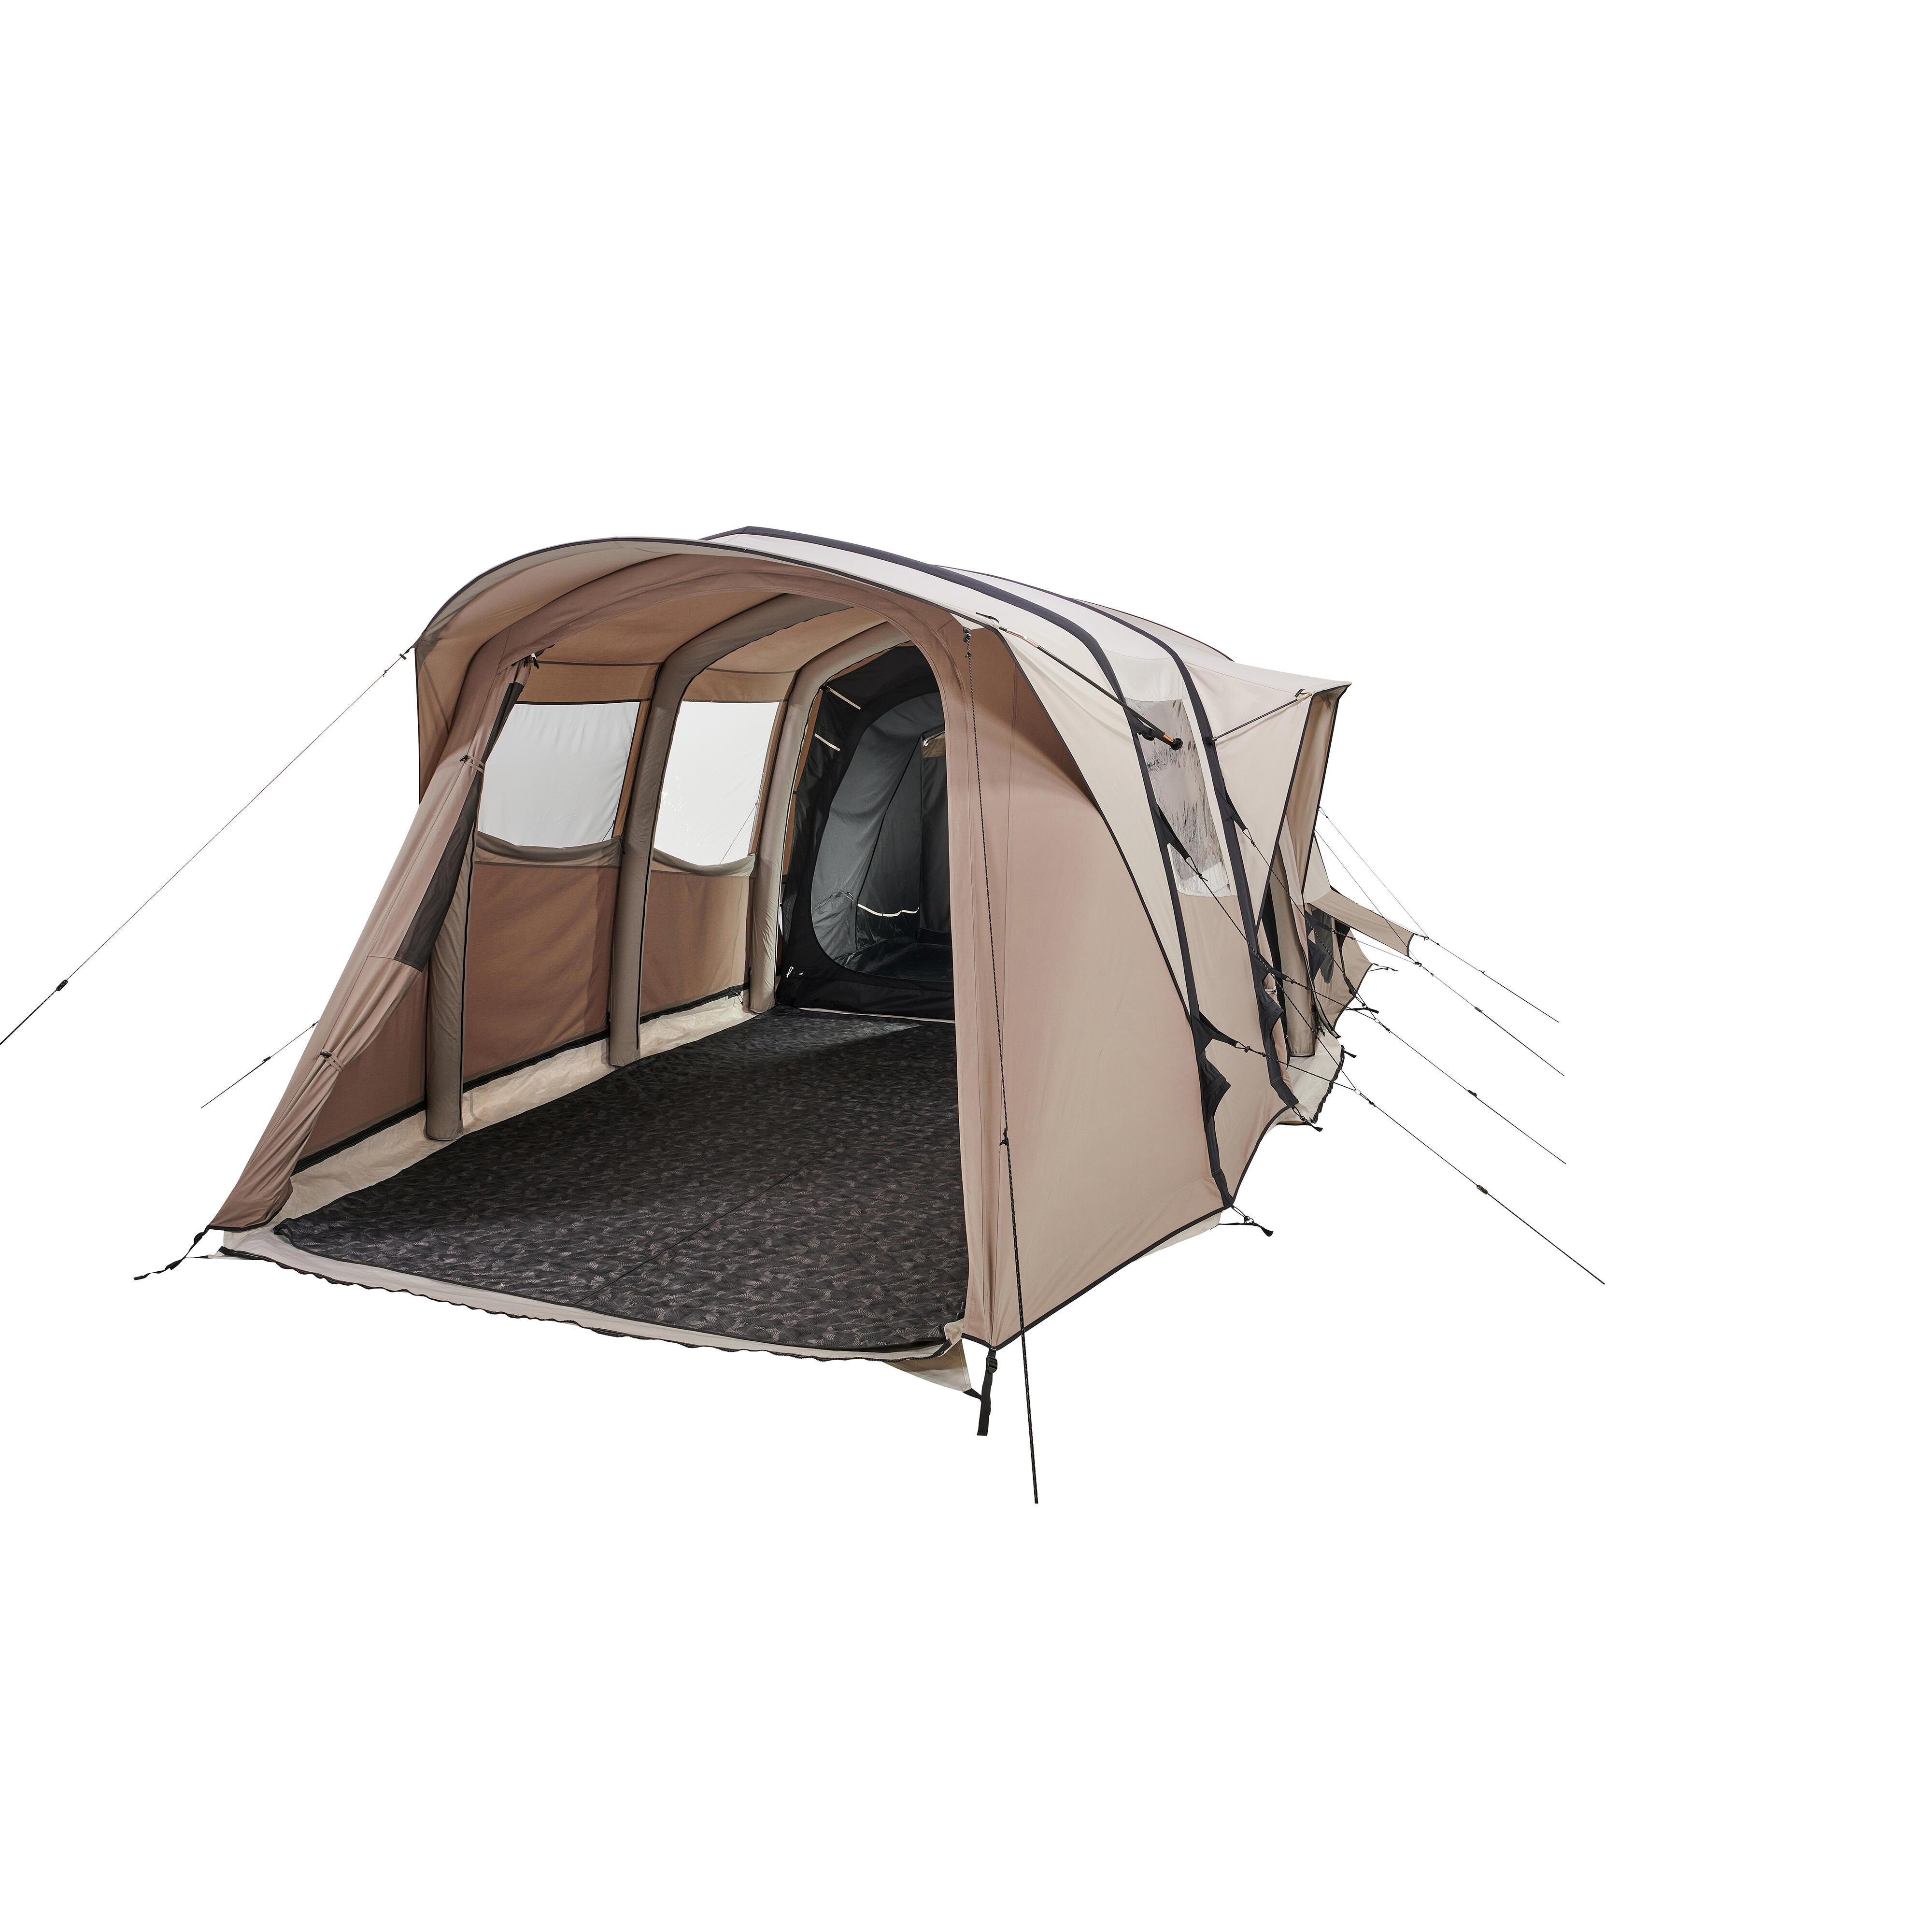 Cort structură gonflabilă camping AirSeconds 6.3 Polibumbac 6 Persoane 3 Camere decathlon.ro imagine 2022